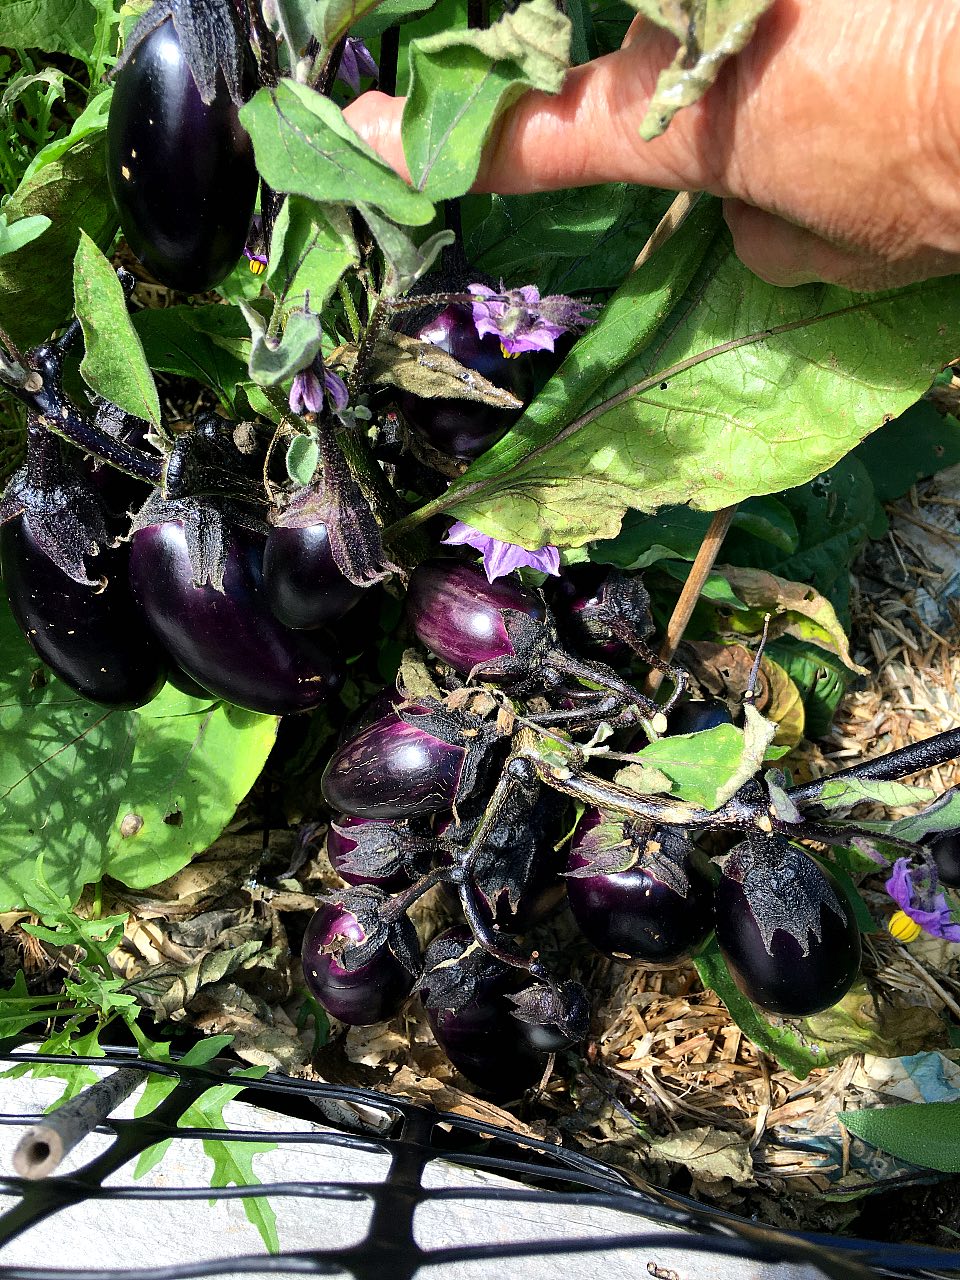 Dozens of eggplants